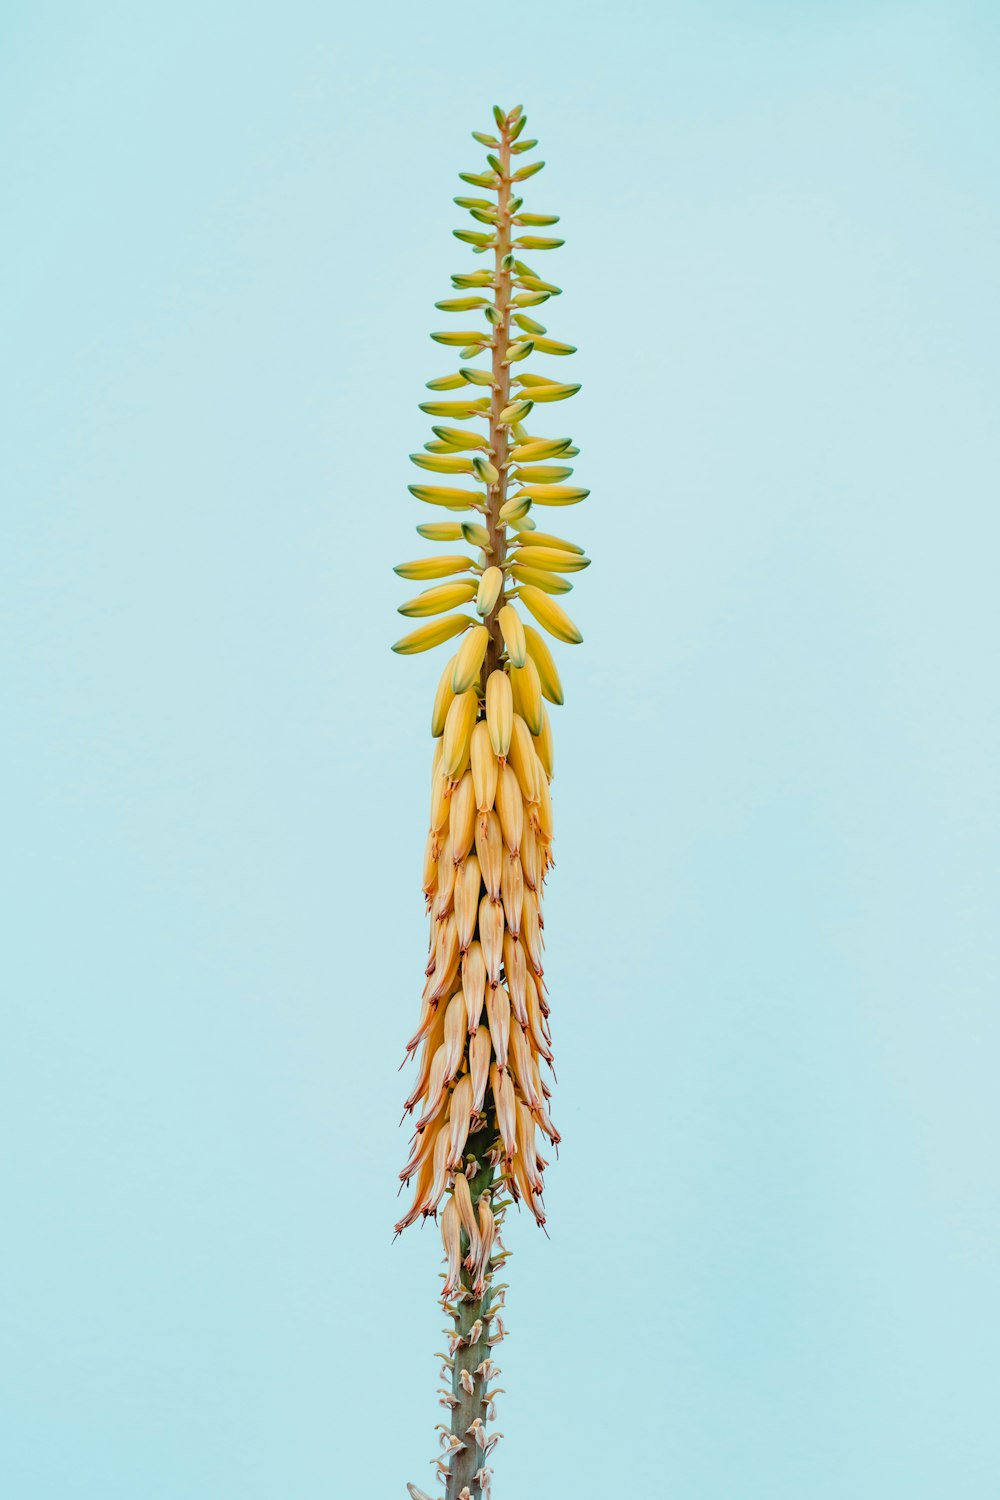 eine Pflanze mit gelben Blüten auf blauem Hintergrund